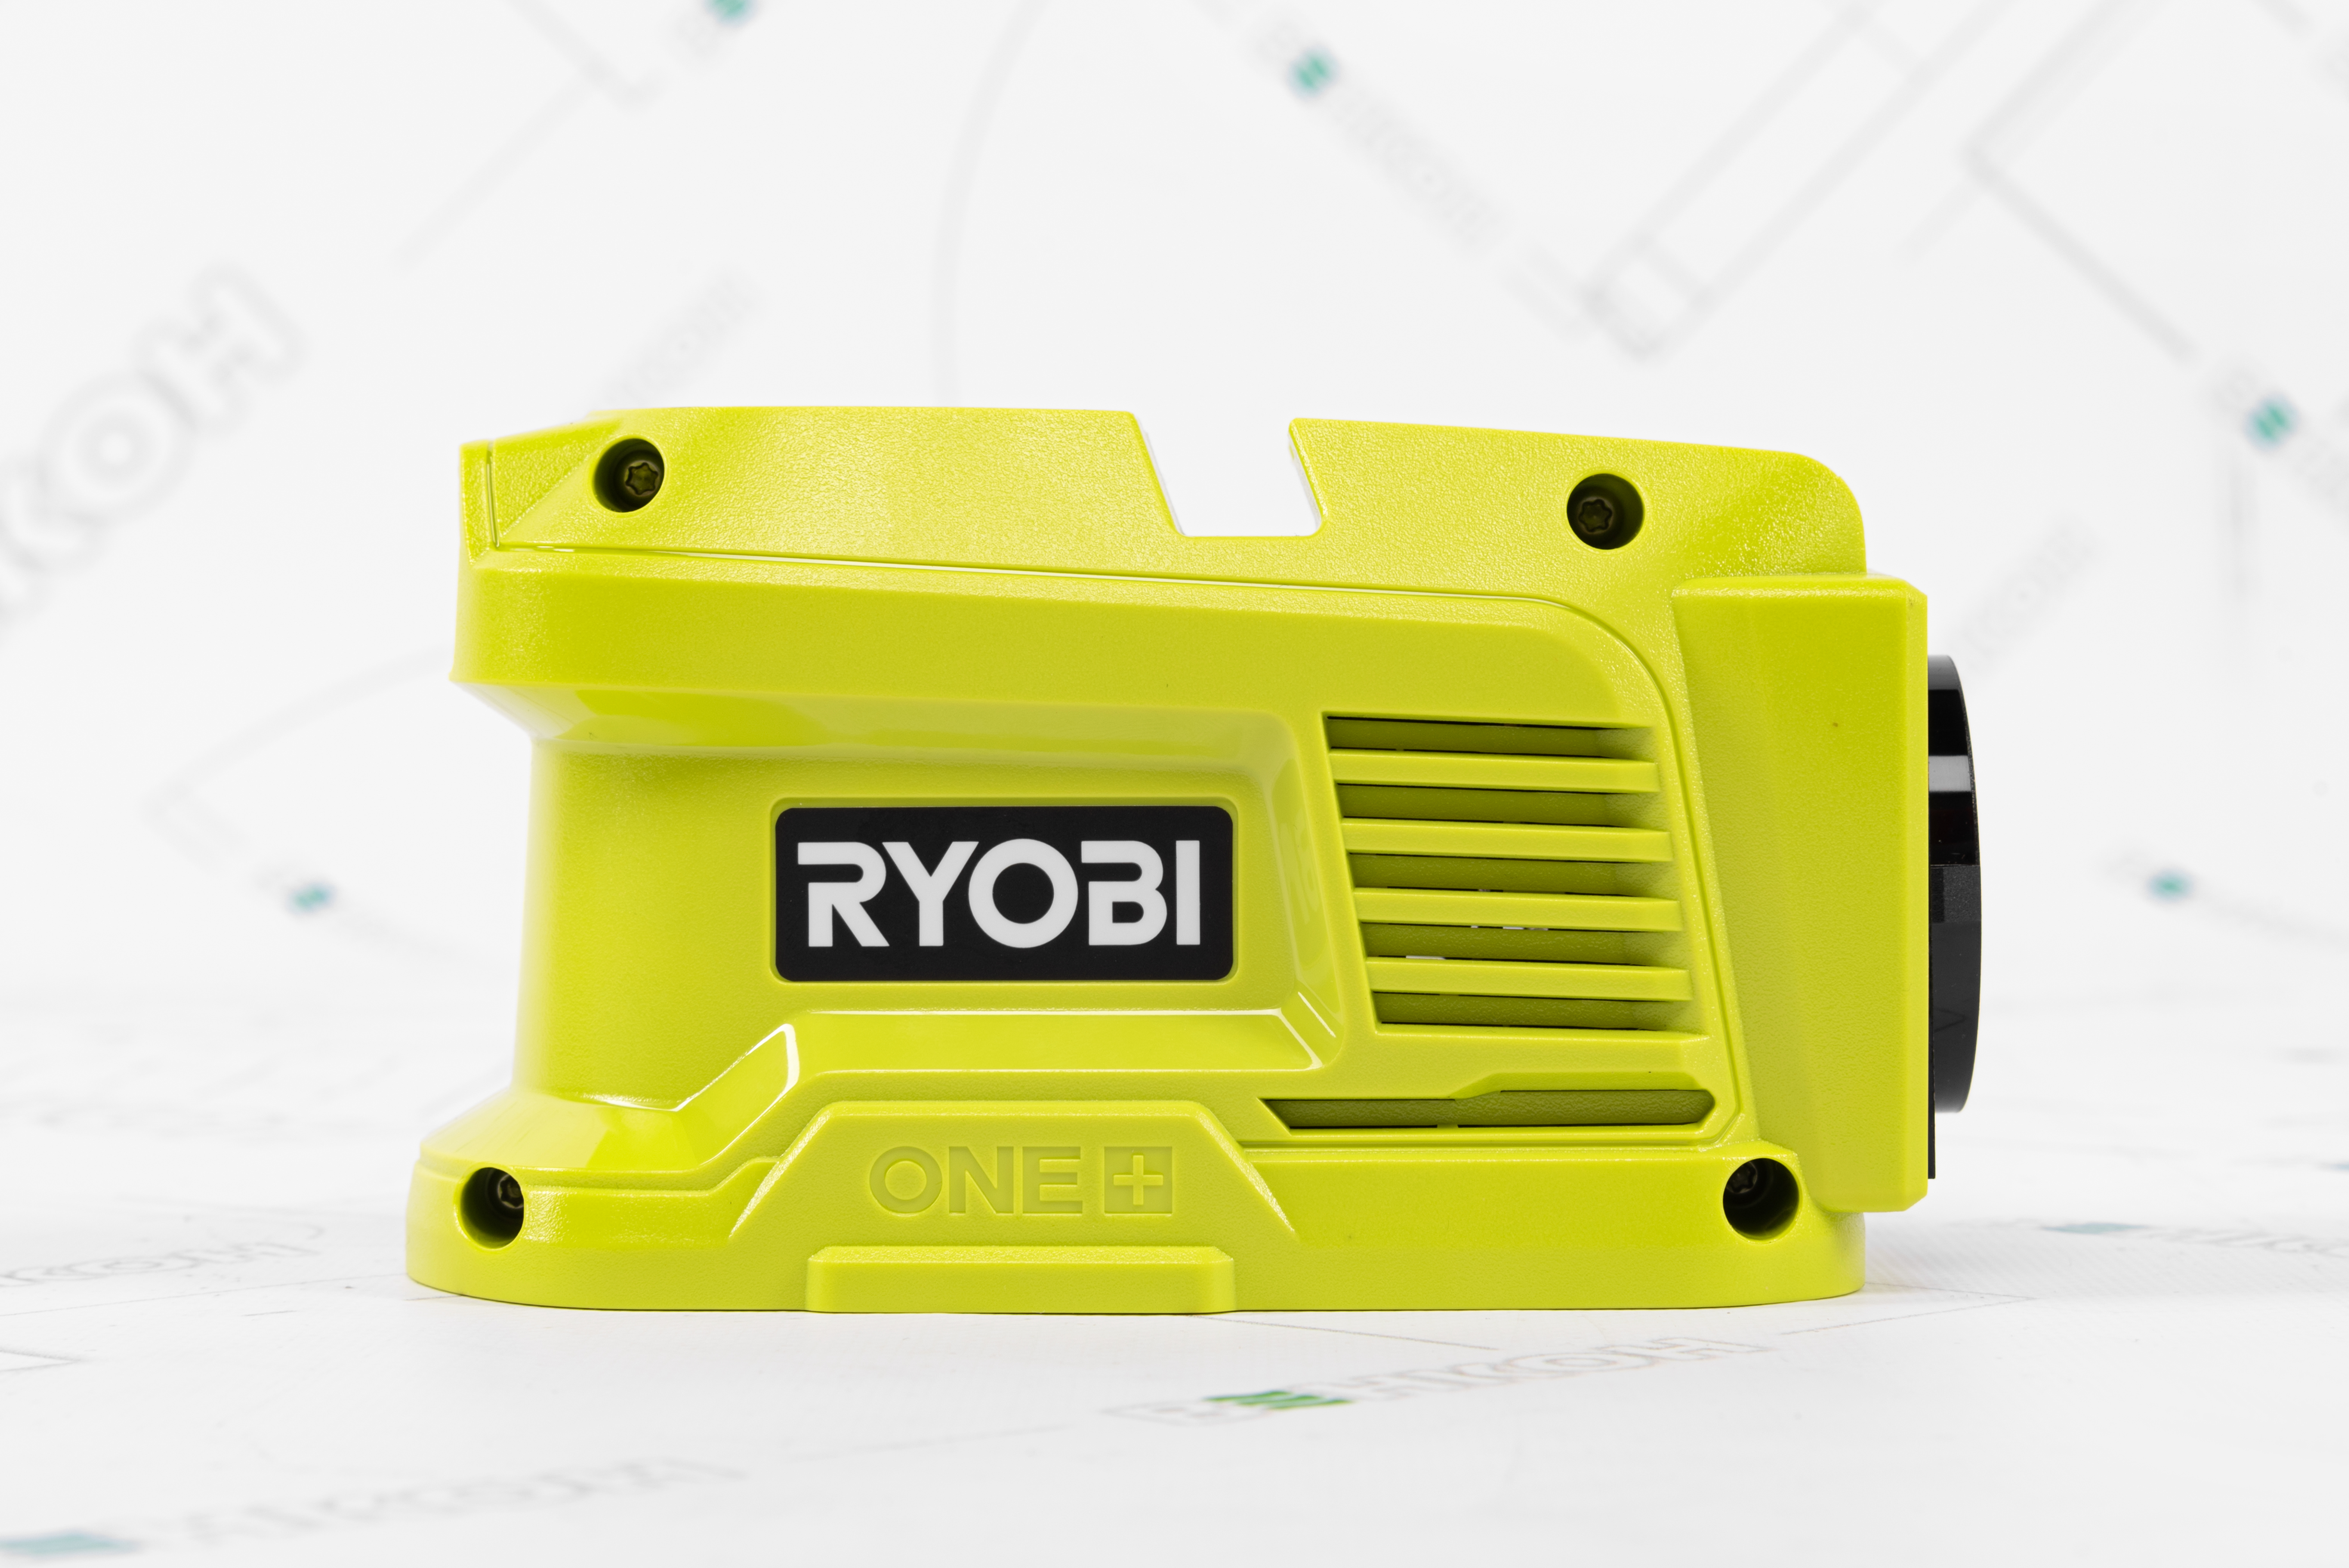 Портативна зарядна станція Ryobi ONE+ 180 Вт*год. (RY18BI150A-0 + RC18120-250) характеристики - фотографія 7